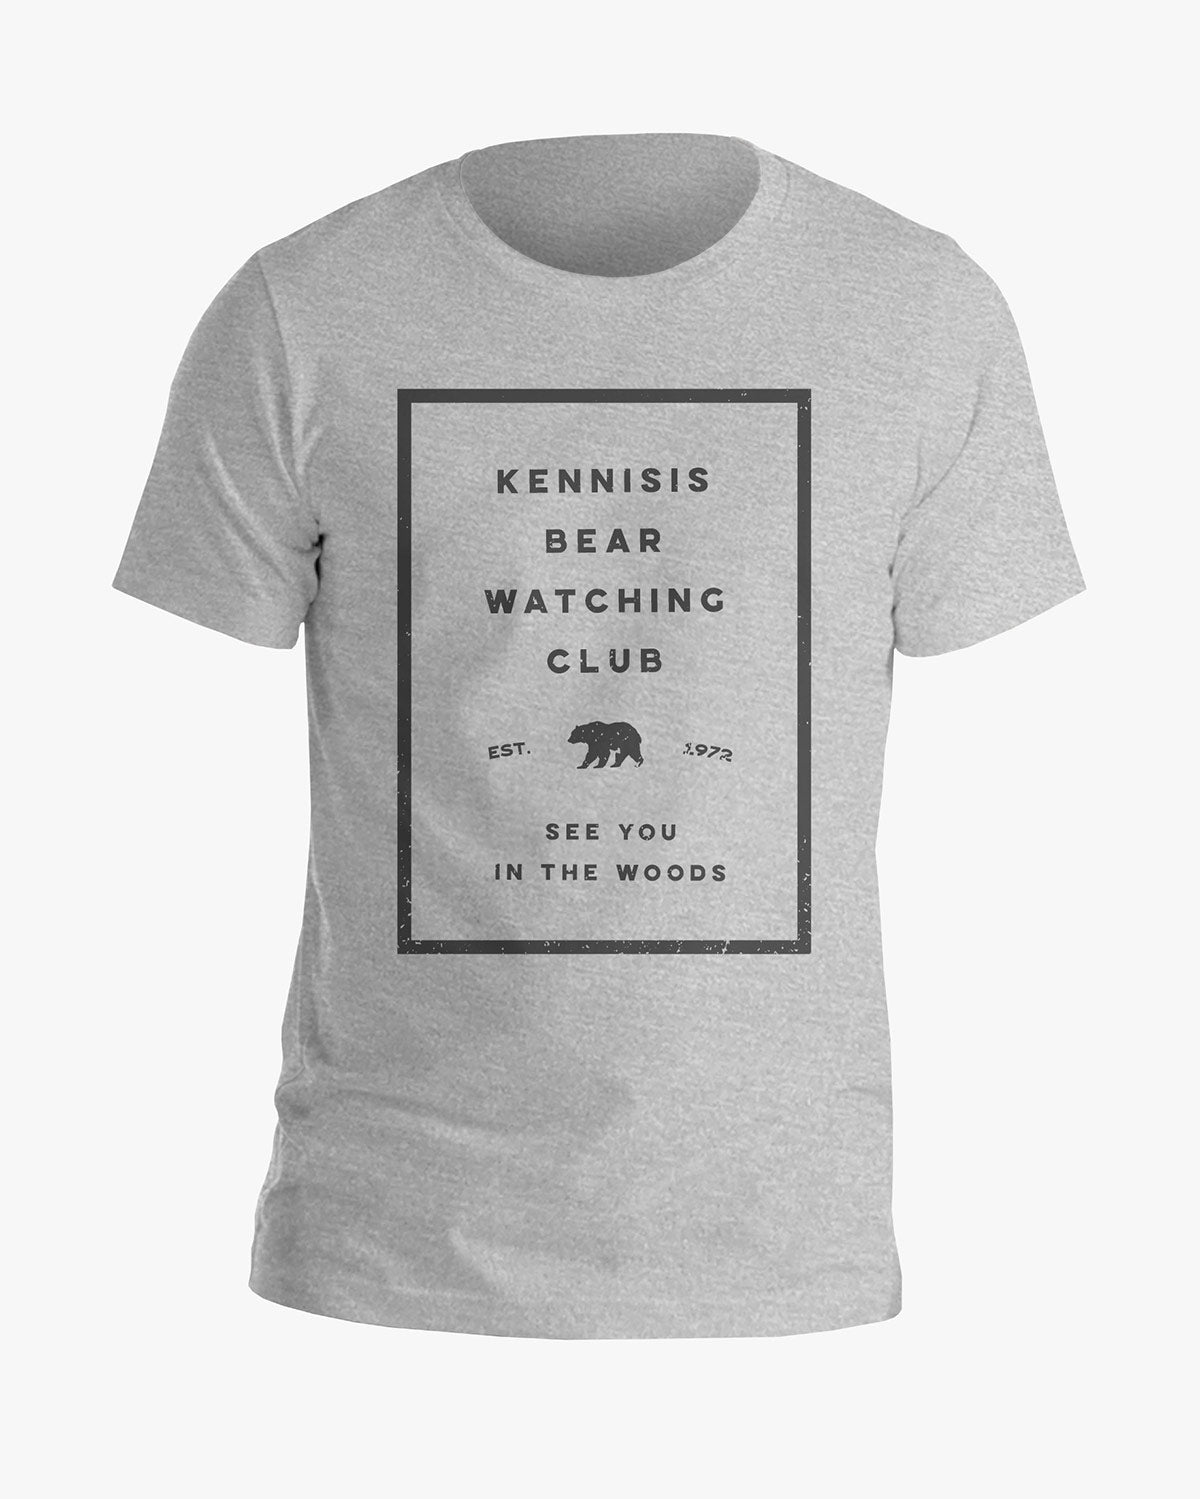 Bear Watching Club - Kennisis Lake - Tee